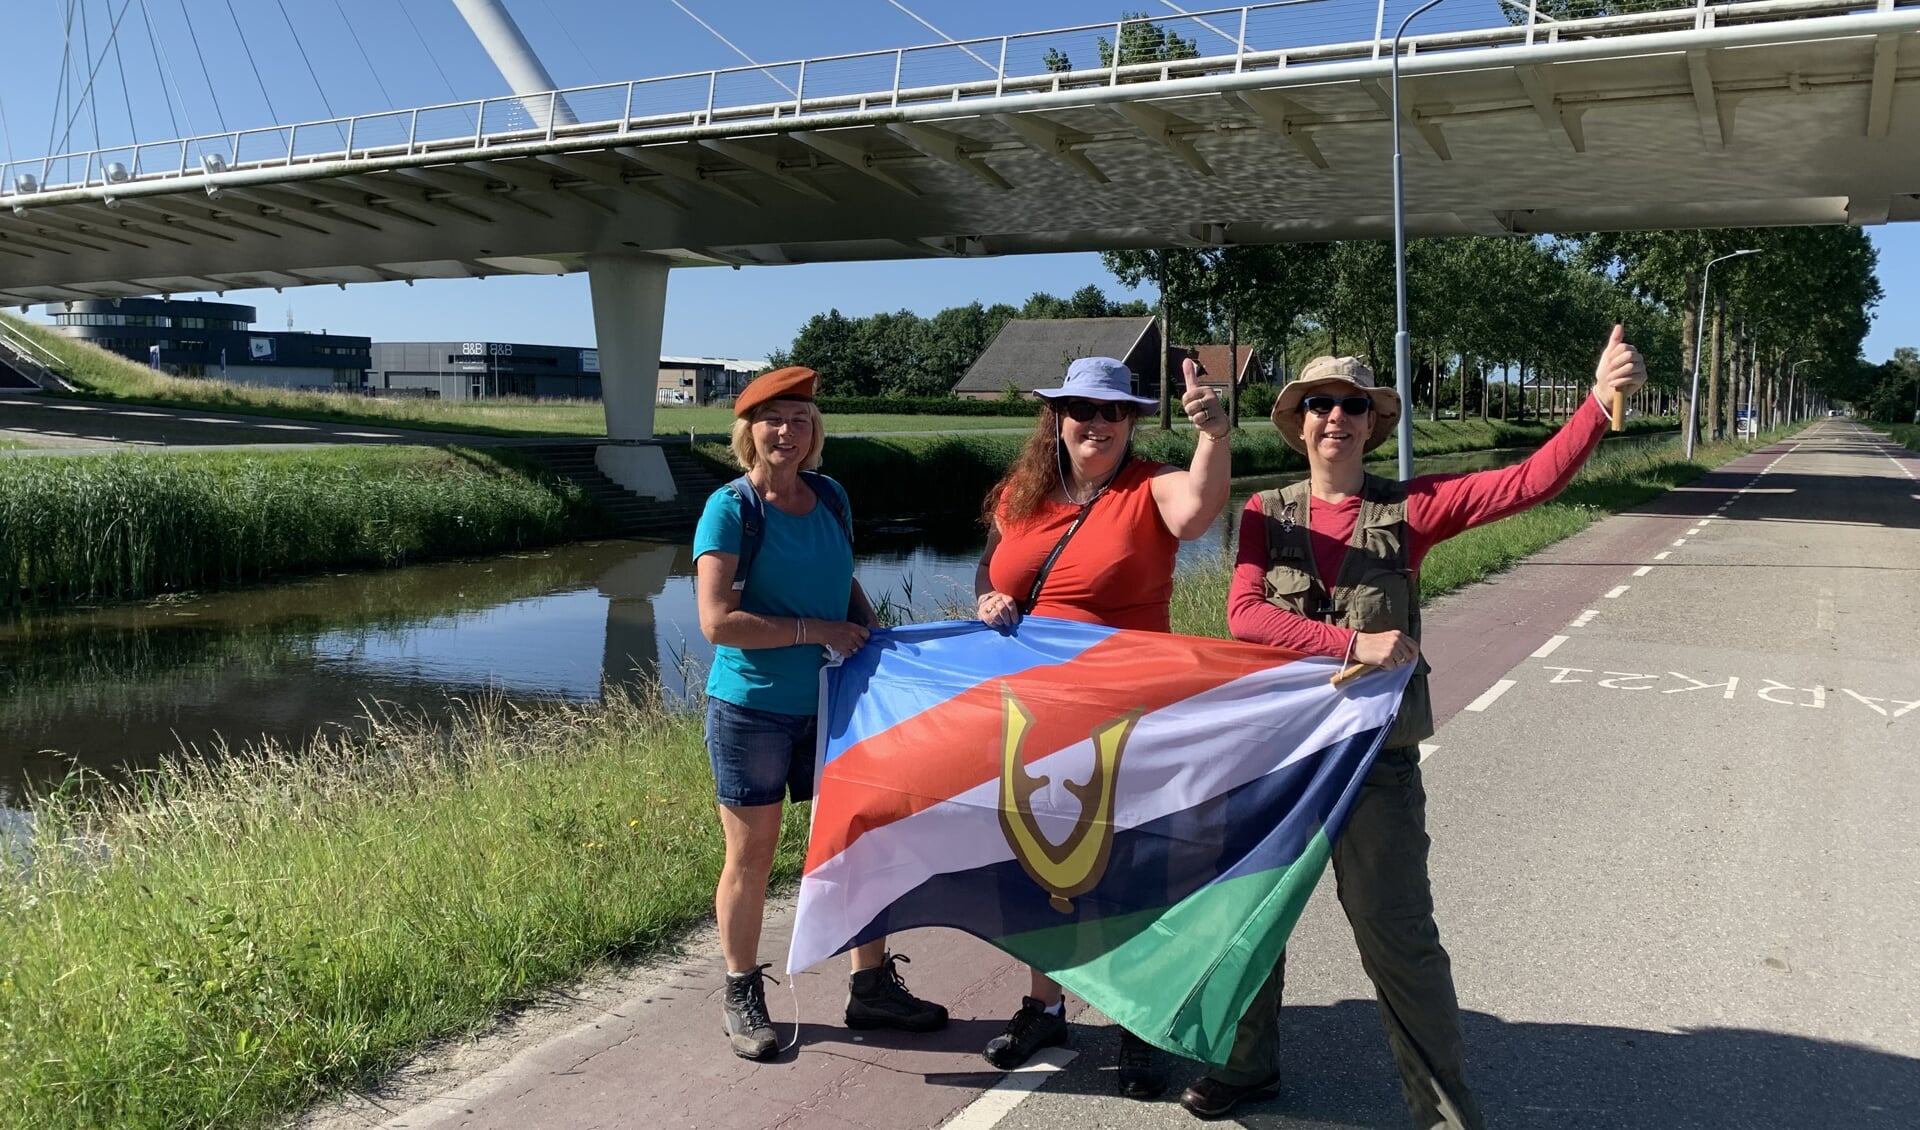 Om de COVID-19 periode een beetje goed door te komen, wandelt Mensink (rechts) regelmatig samen met collega’s én veteranenvriendinnen Manuela Wibier (midden) en Gerda de Ruijte (links).  